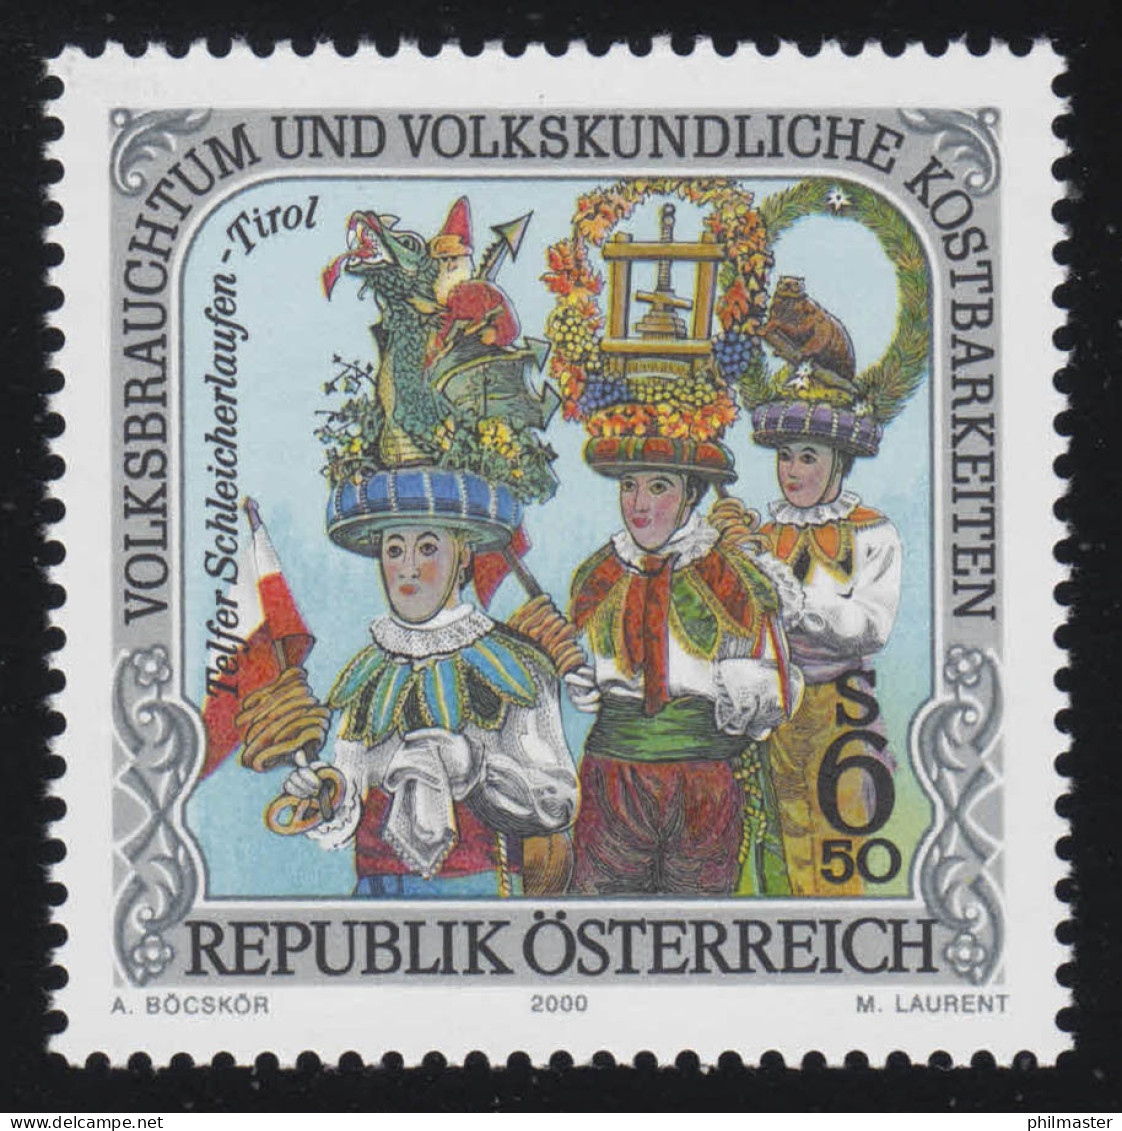 2304 Volksbrauchtum & Kostbarkeiten: Schleicherlaufen In Telfs, 6.50 S ** - Unused Stamps